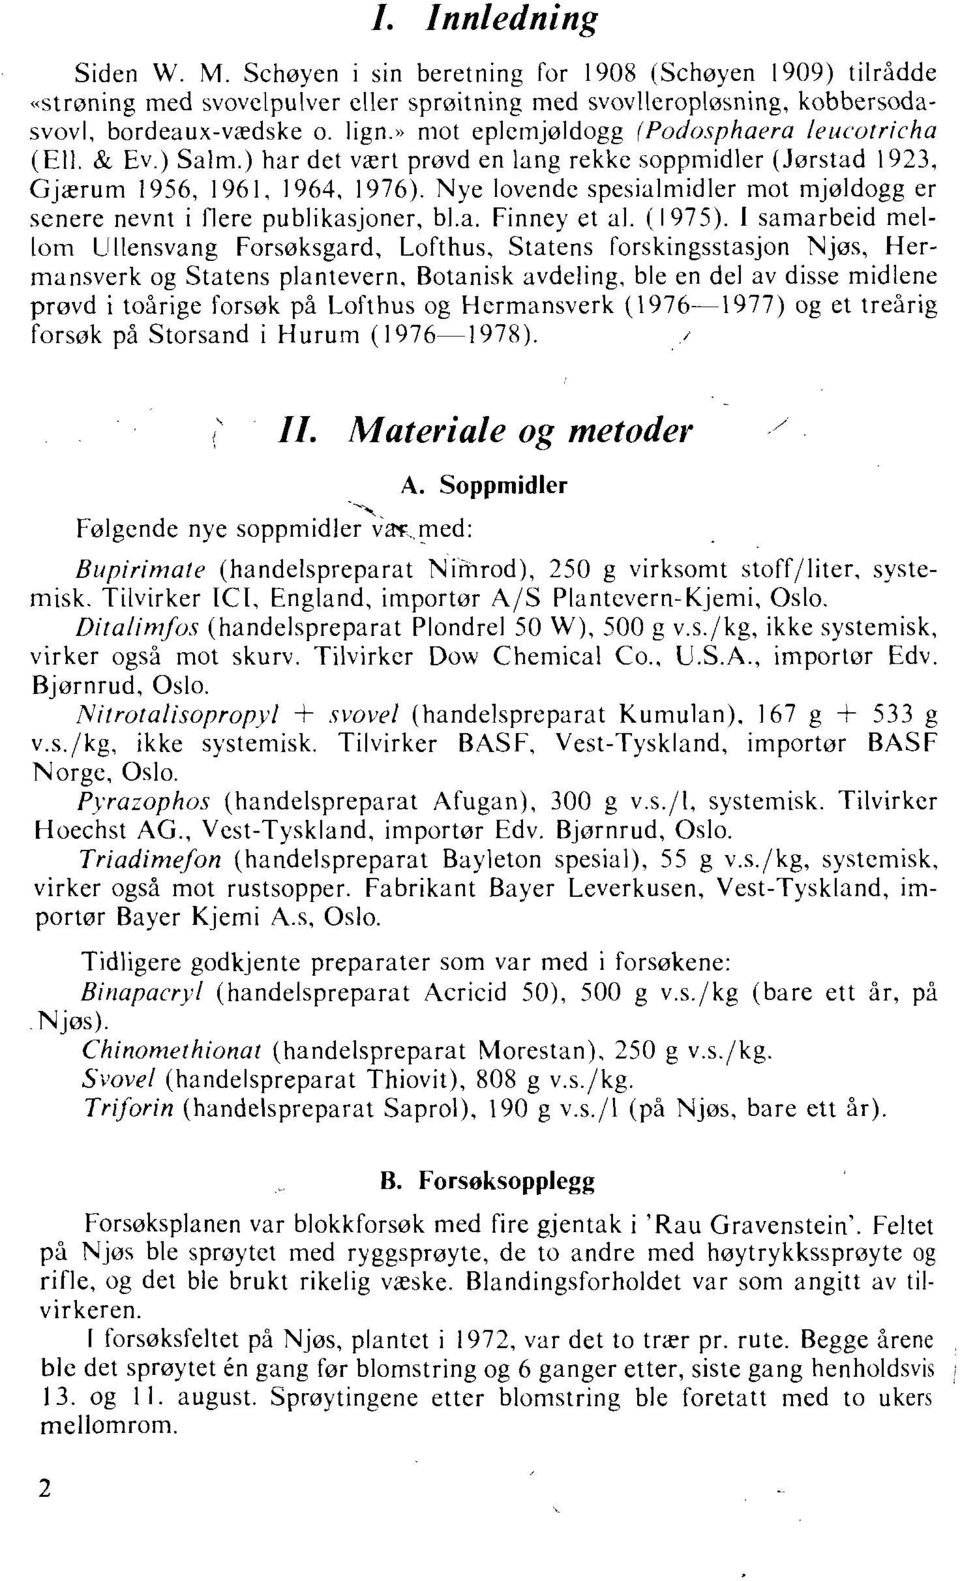 Nye lovende spesialmidler mot mjoldogg er senere nevnt i Oere publikasjoner, bl.a. Finney et al. (1975).